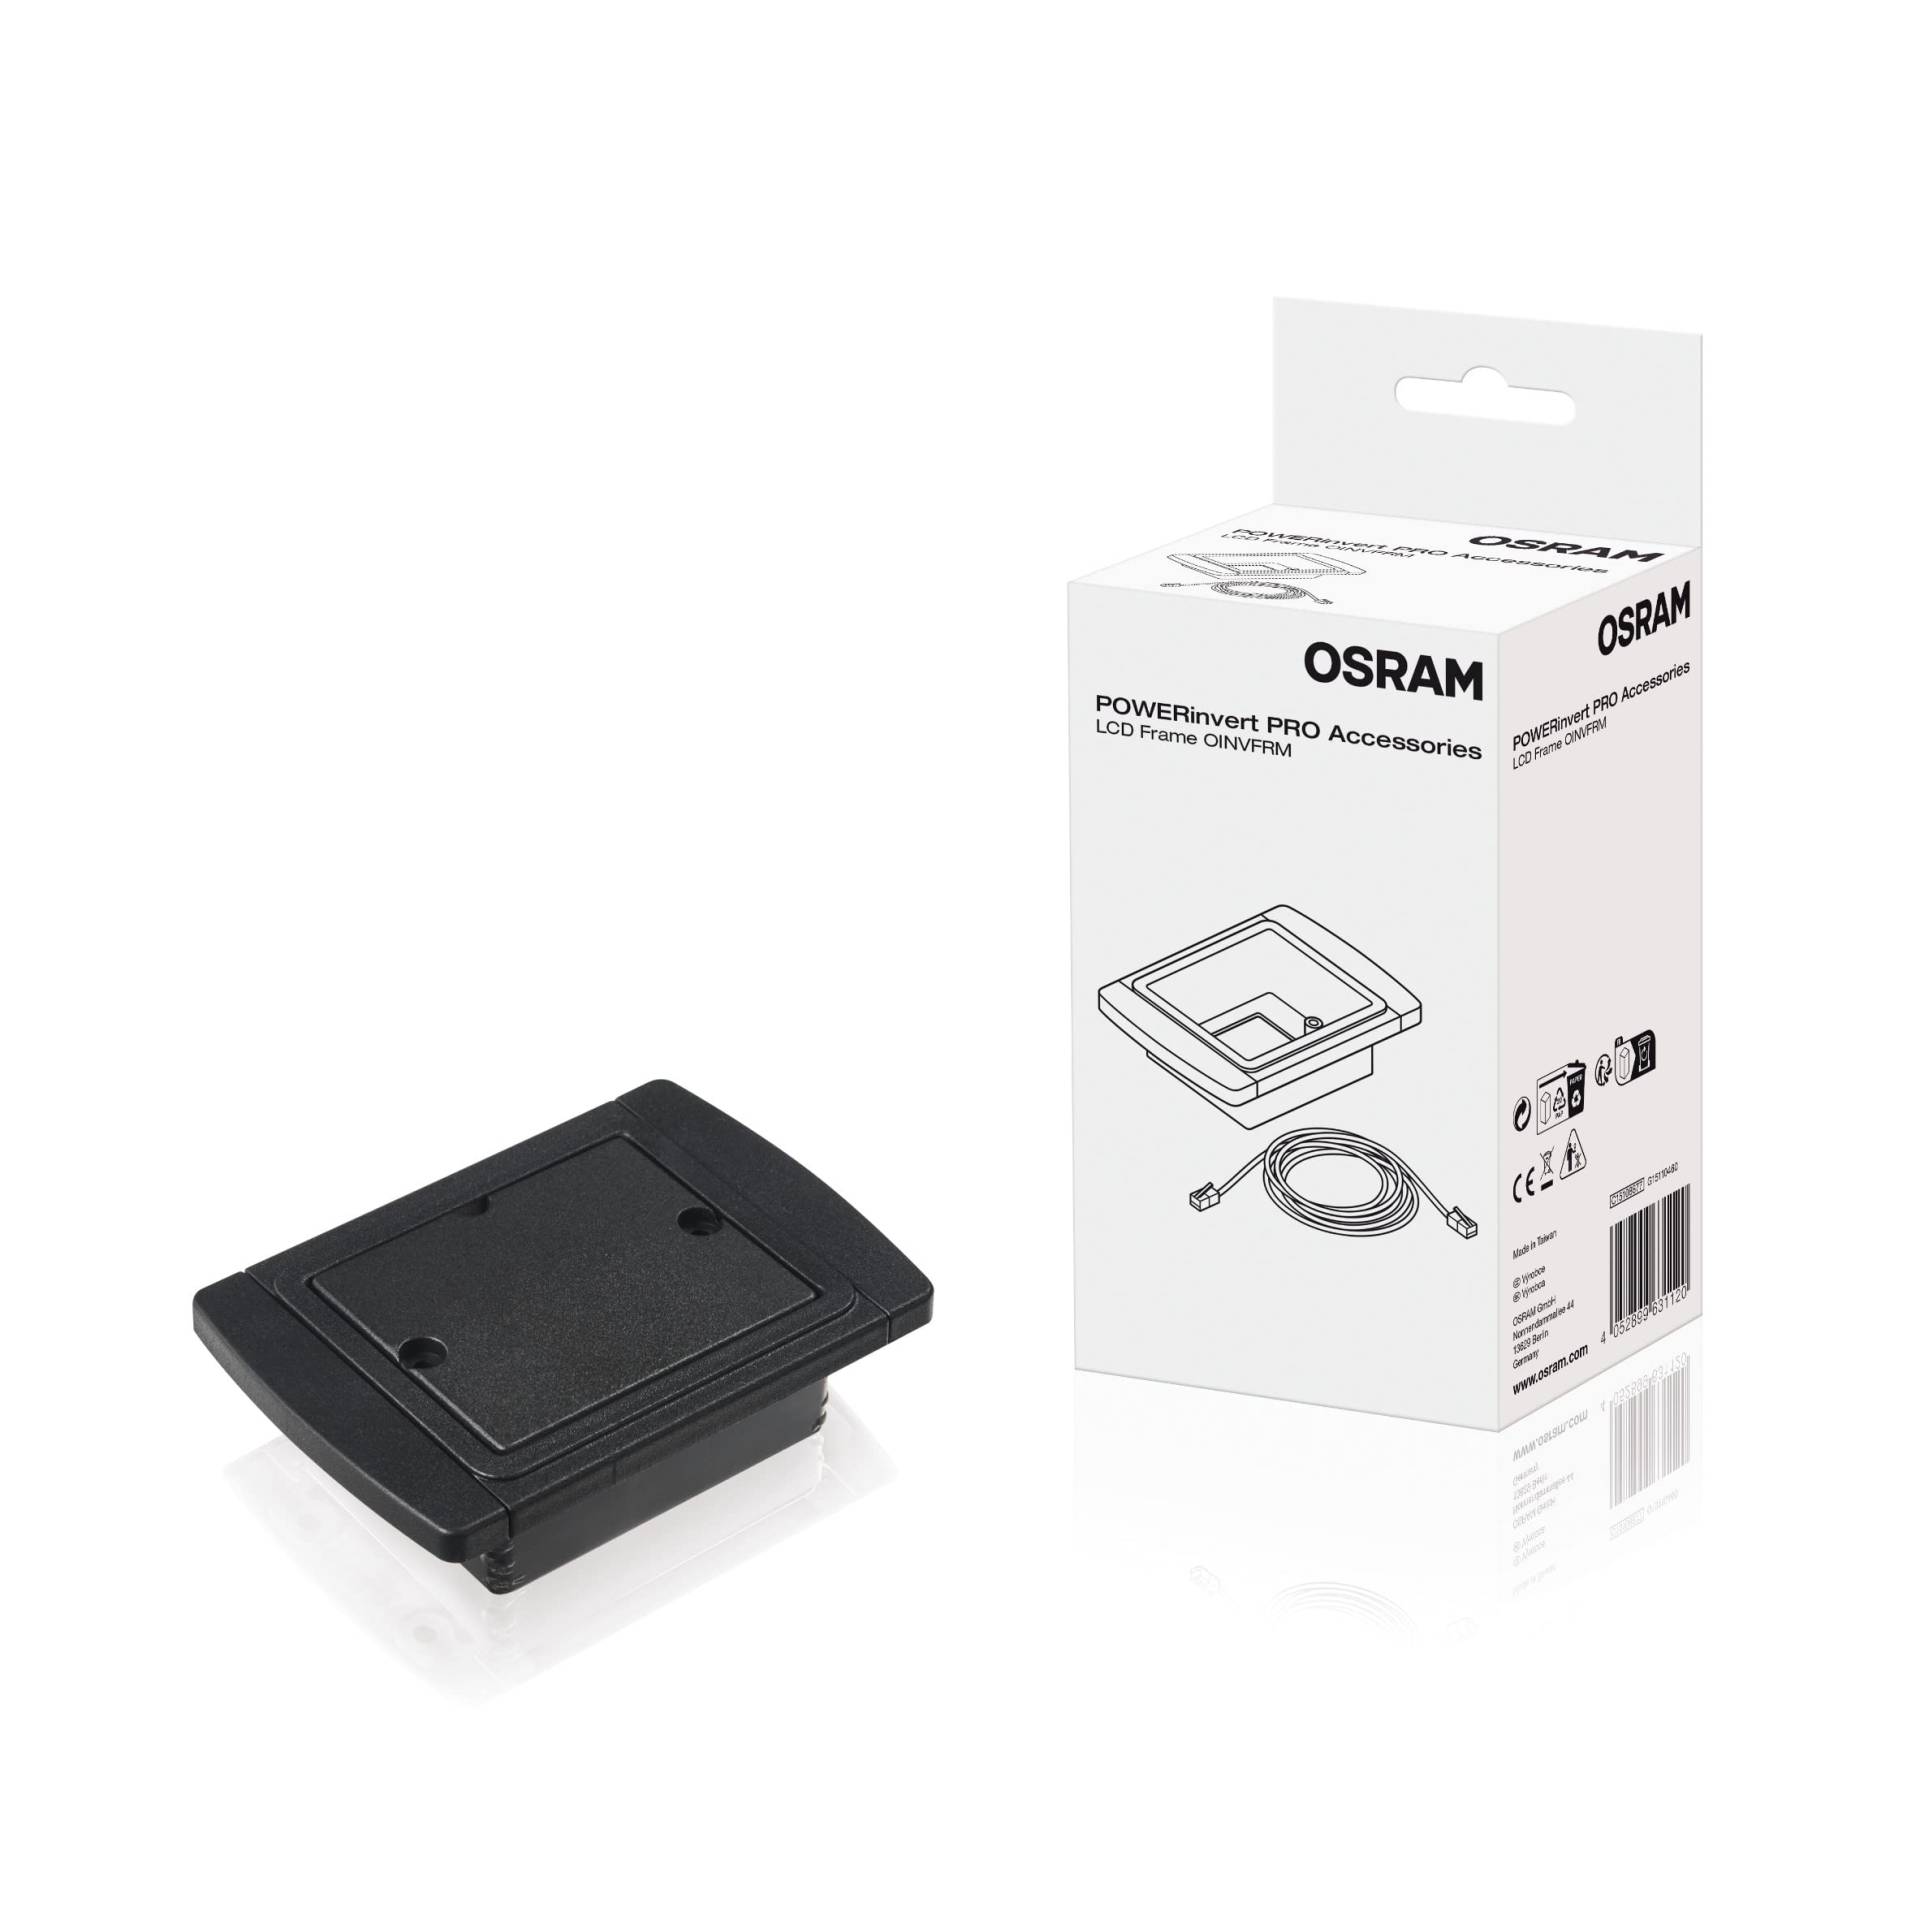 OSRAM LCD Frame, OINVFRM, Zubehör für Wechselrichter, Rahmen für integrierten LCD-Bildschirm, zur bequemen Platzierung des Displays abseits des Wechselrichters von Osram